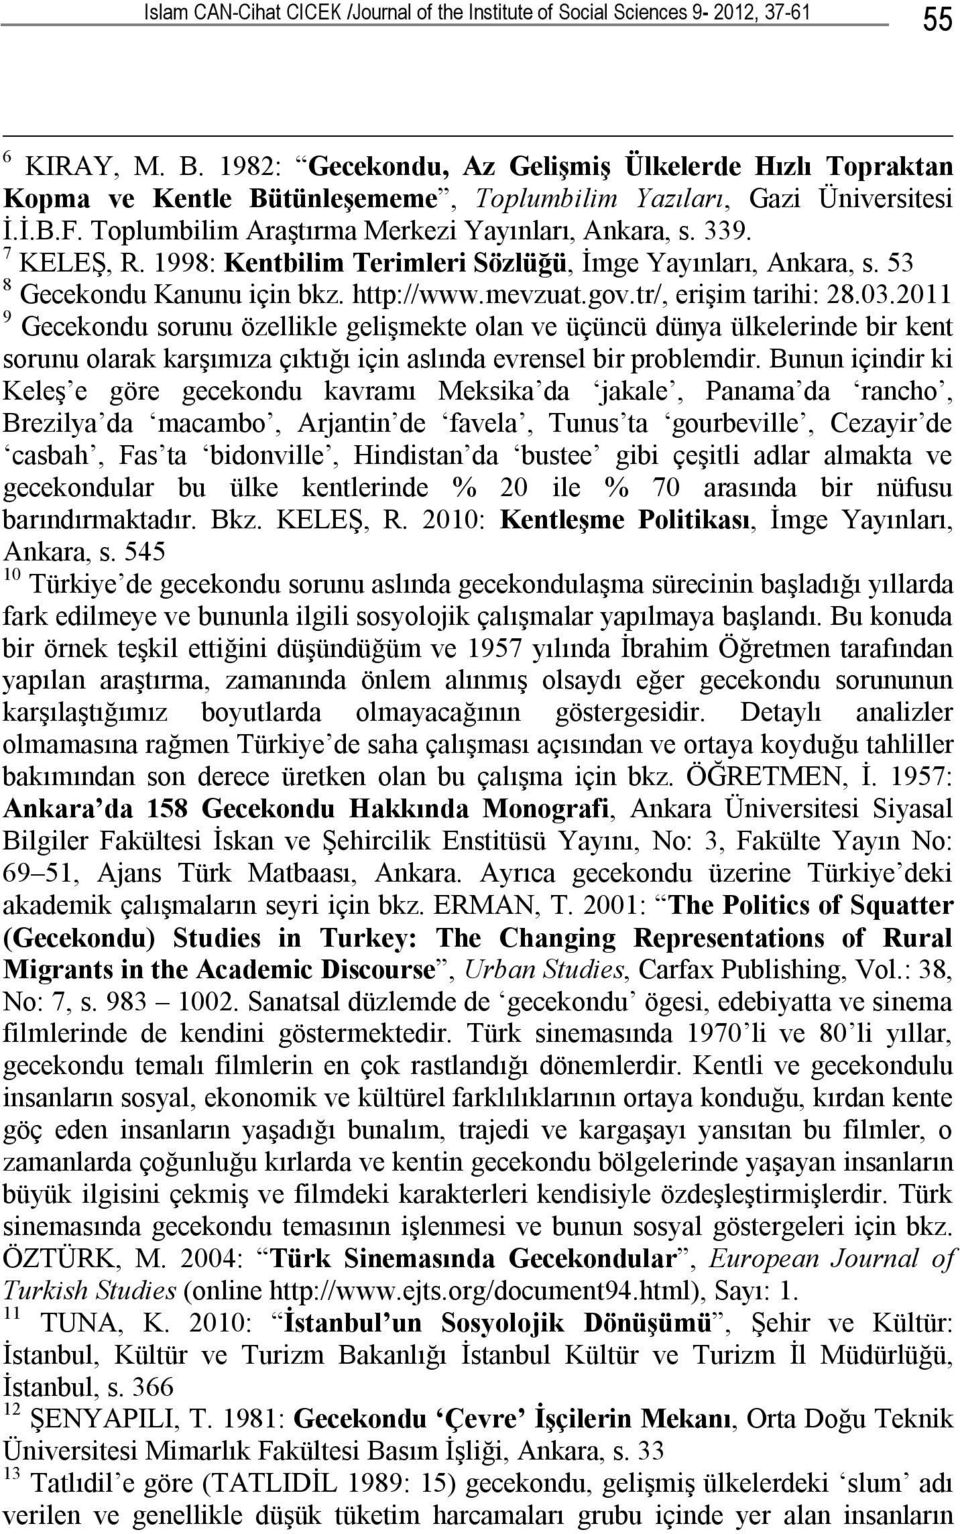 7 KELEŞ, R. 1998: Kentbilim Terimleri Sözlüğü, İmge Yayınları, Ankara, s. 53 8 Gecekondu Kanunu için bkz. http://www.mevzuat.gov.tr/, erişim tarihi: 28.03.